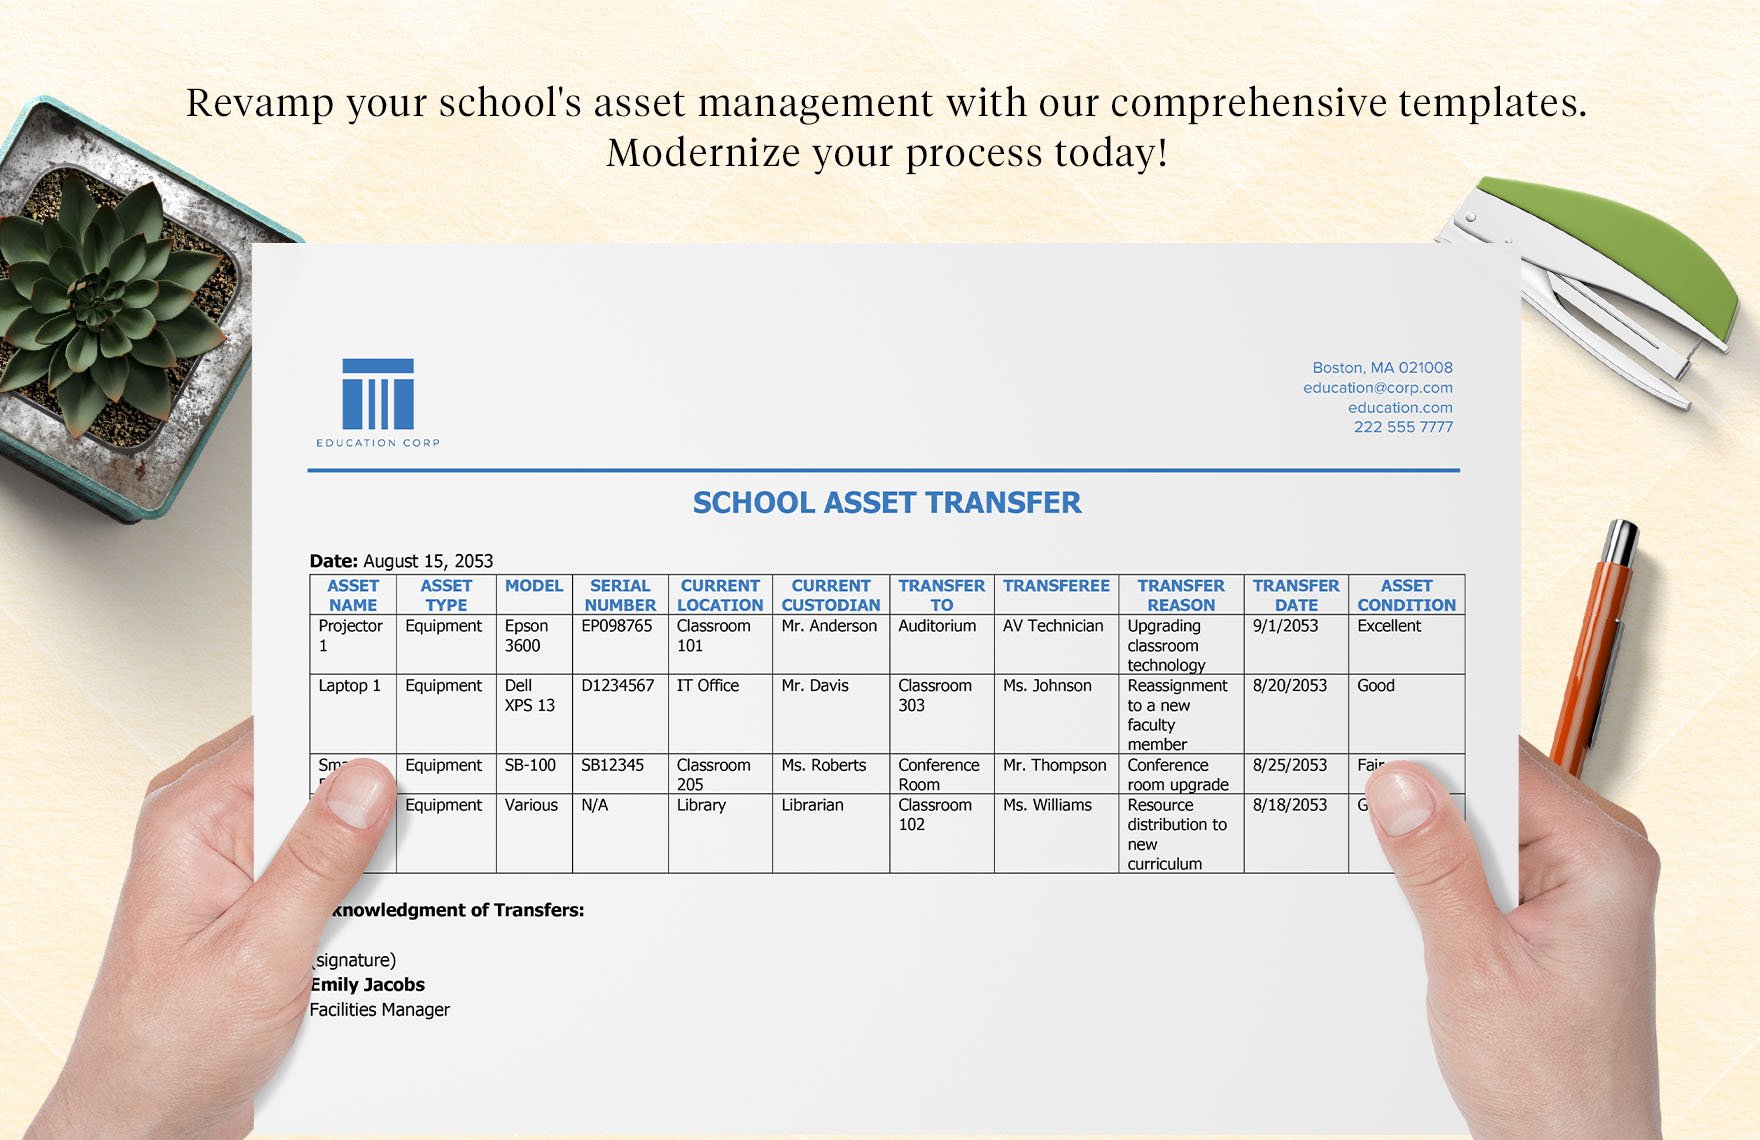 School Asset Transfer Template